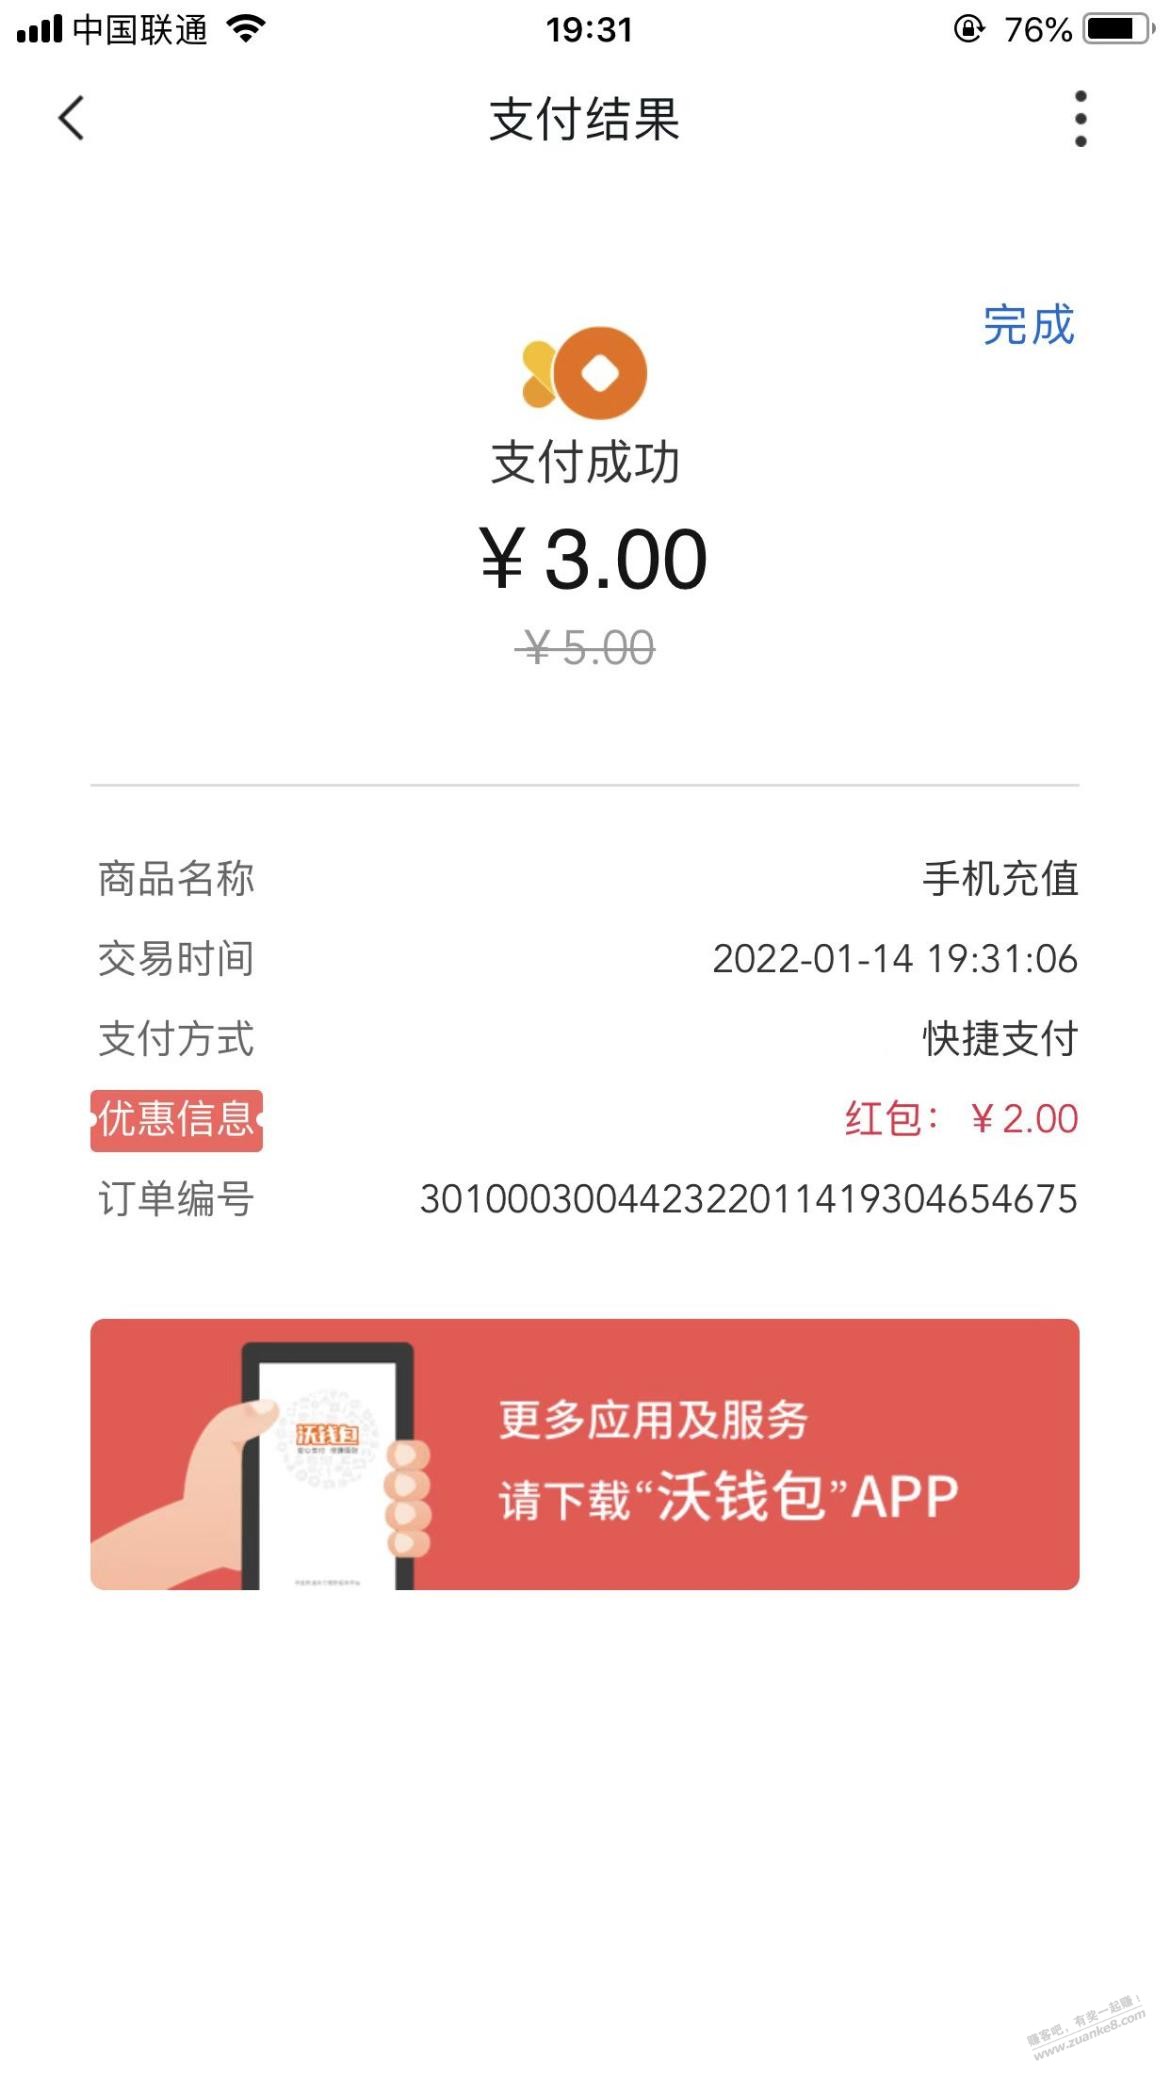 沃钱包app5-2话费券-惠小助(52huixz.com)